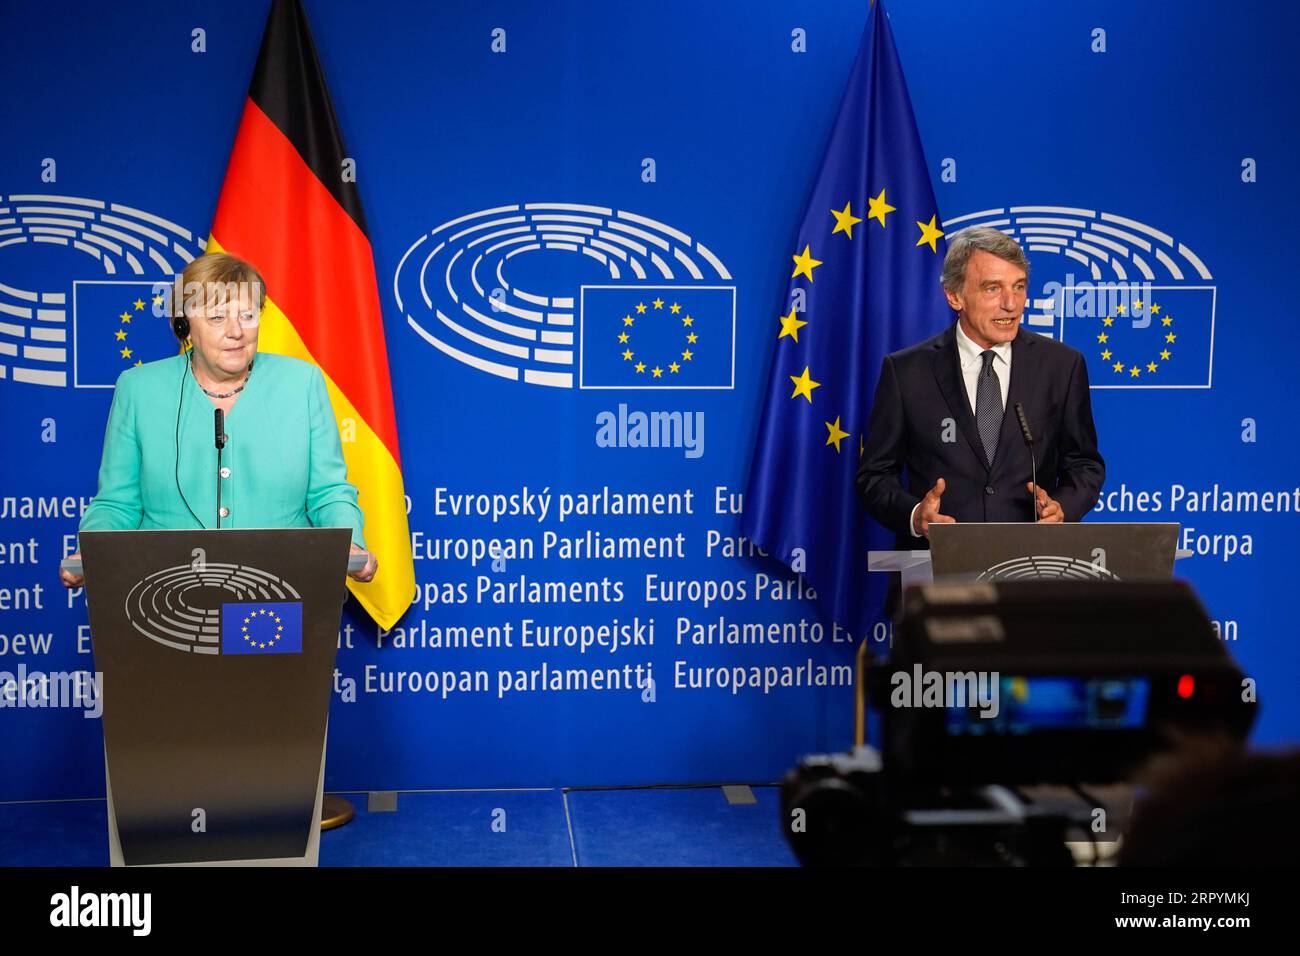 200709 -- BRUXELLES, 9 luglio 2020 Xinhua -- la cancelliera tedesca Angela Merkel L e il presidente del Parlamento europeo David Sassoli partecipano a una conferenza stampa al Parlamento europeo a Bruxelles, in Belgio, l'8 luglio 2020. Raggiungere rapidamente un accordo su un ambizioso pacchetto europeo di ripresa è la massima priorità dell'Unione europea per le prossime settimane, i leader del blocco hanno concordato mercoledì in occasione di una riunione con la Cancelliera tedesca Angela Merkel. La Germania ha assunto la presidenza di turno del Consiglio dell'UE il 1° luglio. Unione europea/Handout tramite Xinhua BELGIO-BRUXELLES-UE-PRESIDENZA A ROTAZIONE-PAC PER LA RIPRESA Foto Stock